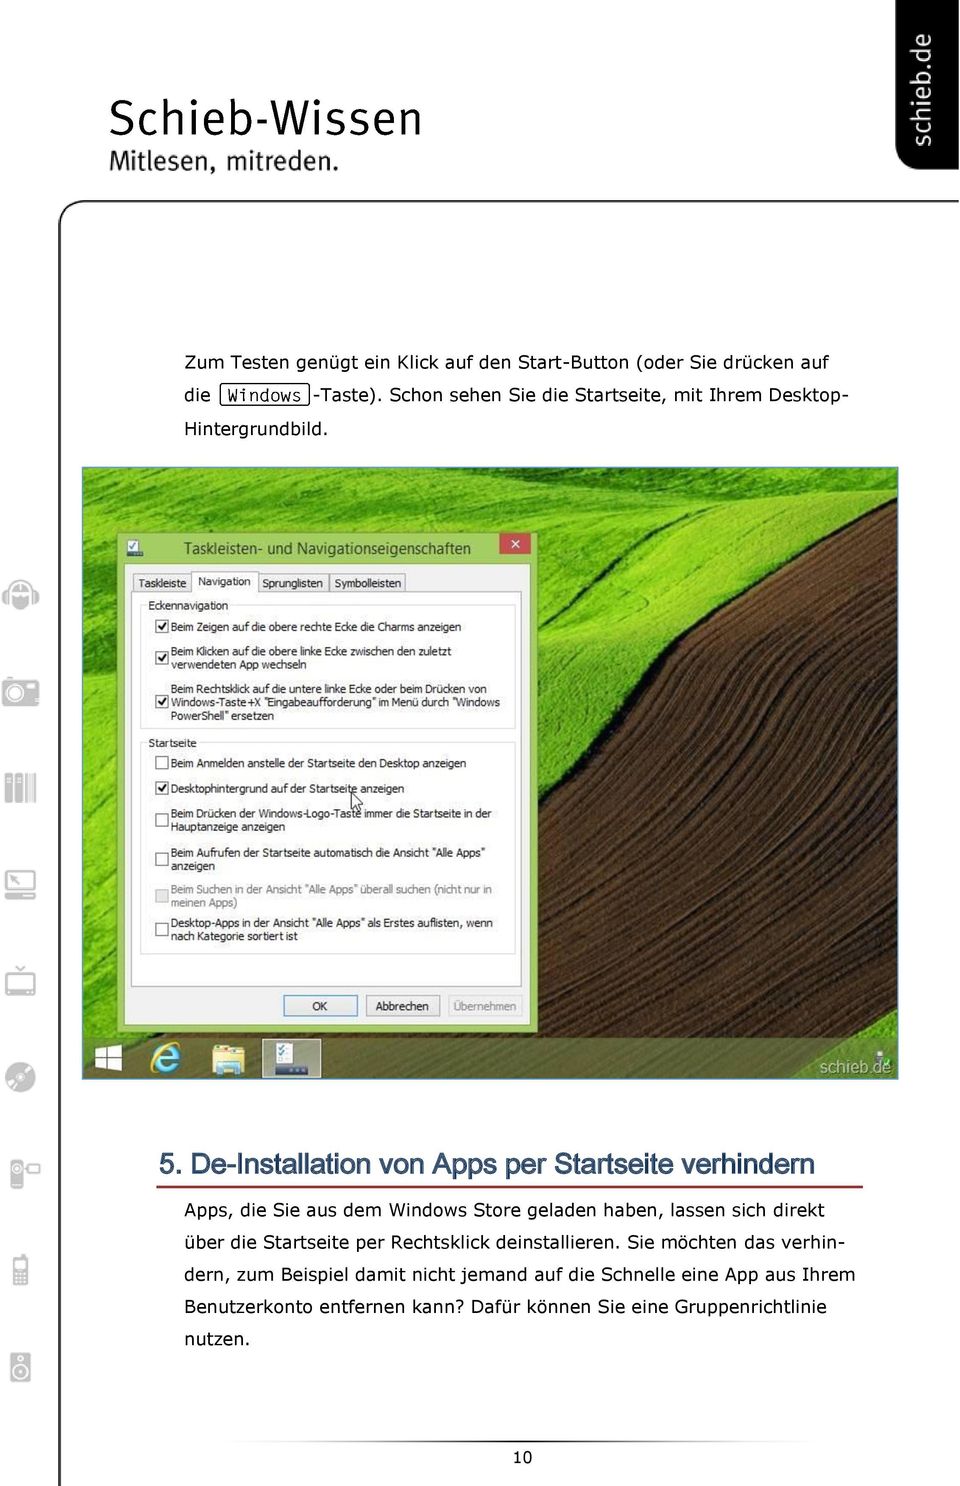 De-Installation von Apps per Startseite verhindern Apps, die Sie aus dem Windows Store geladen haben, lassen sich direkt über